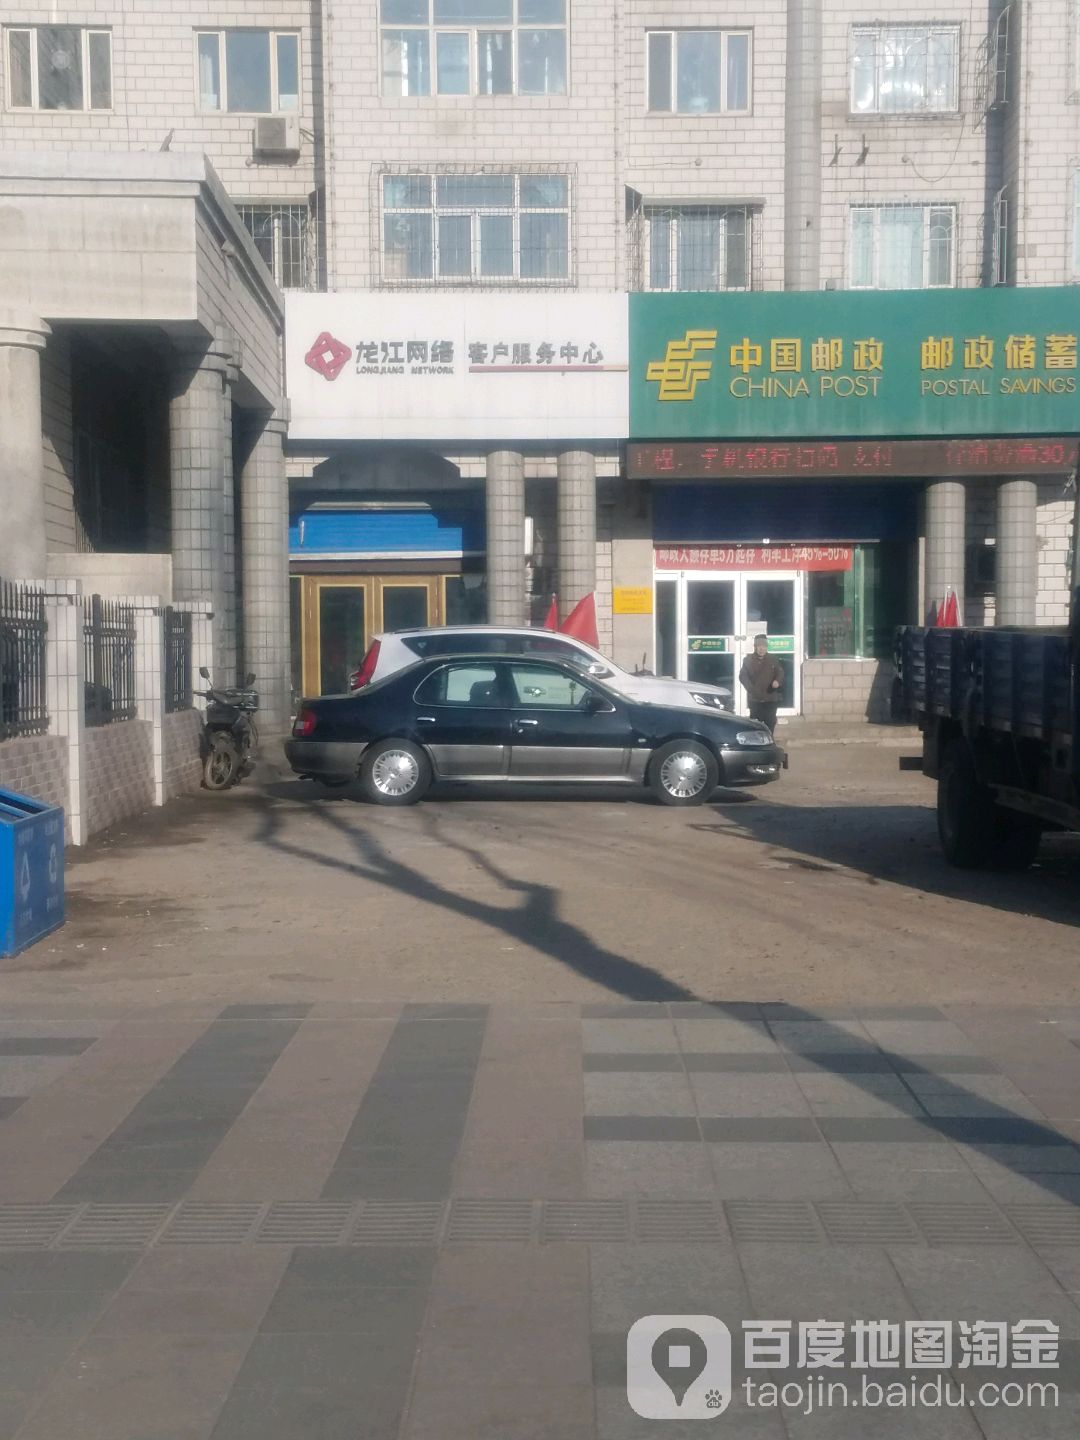 龙江网路客户服务中心(光华街店)